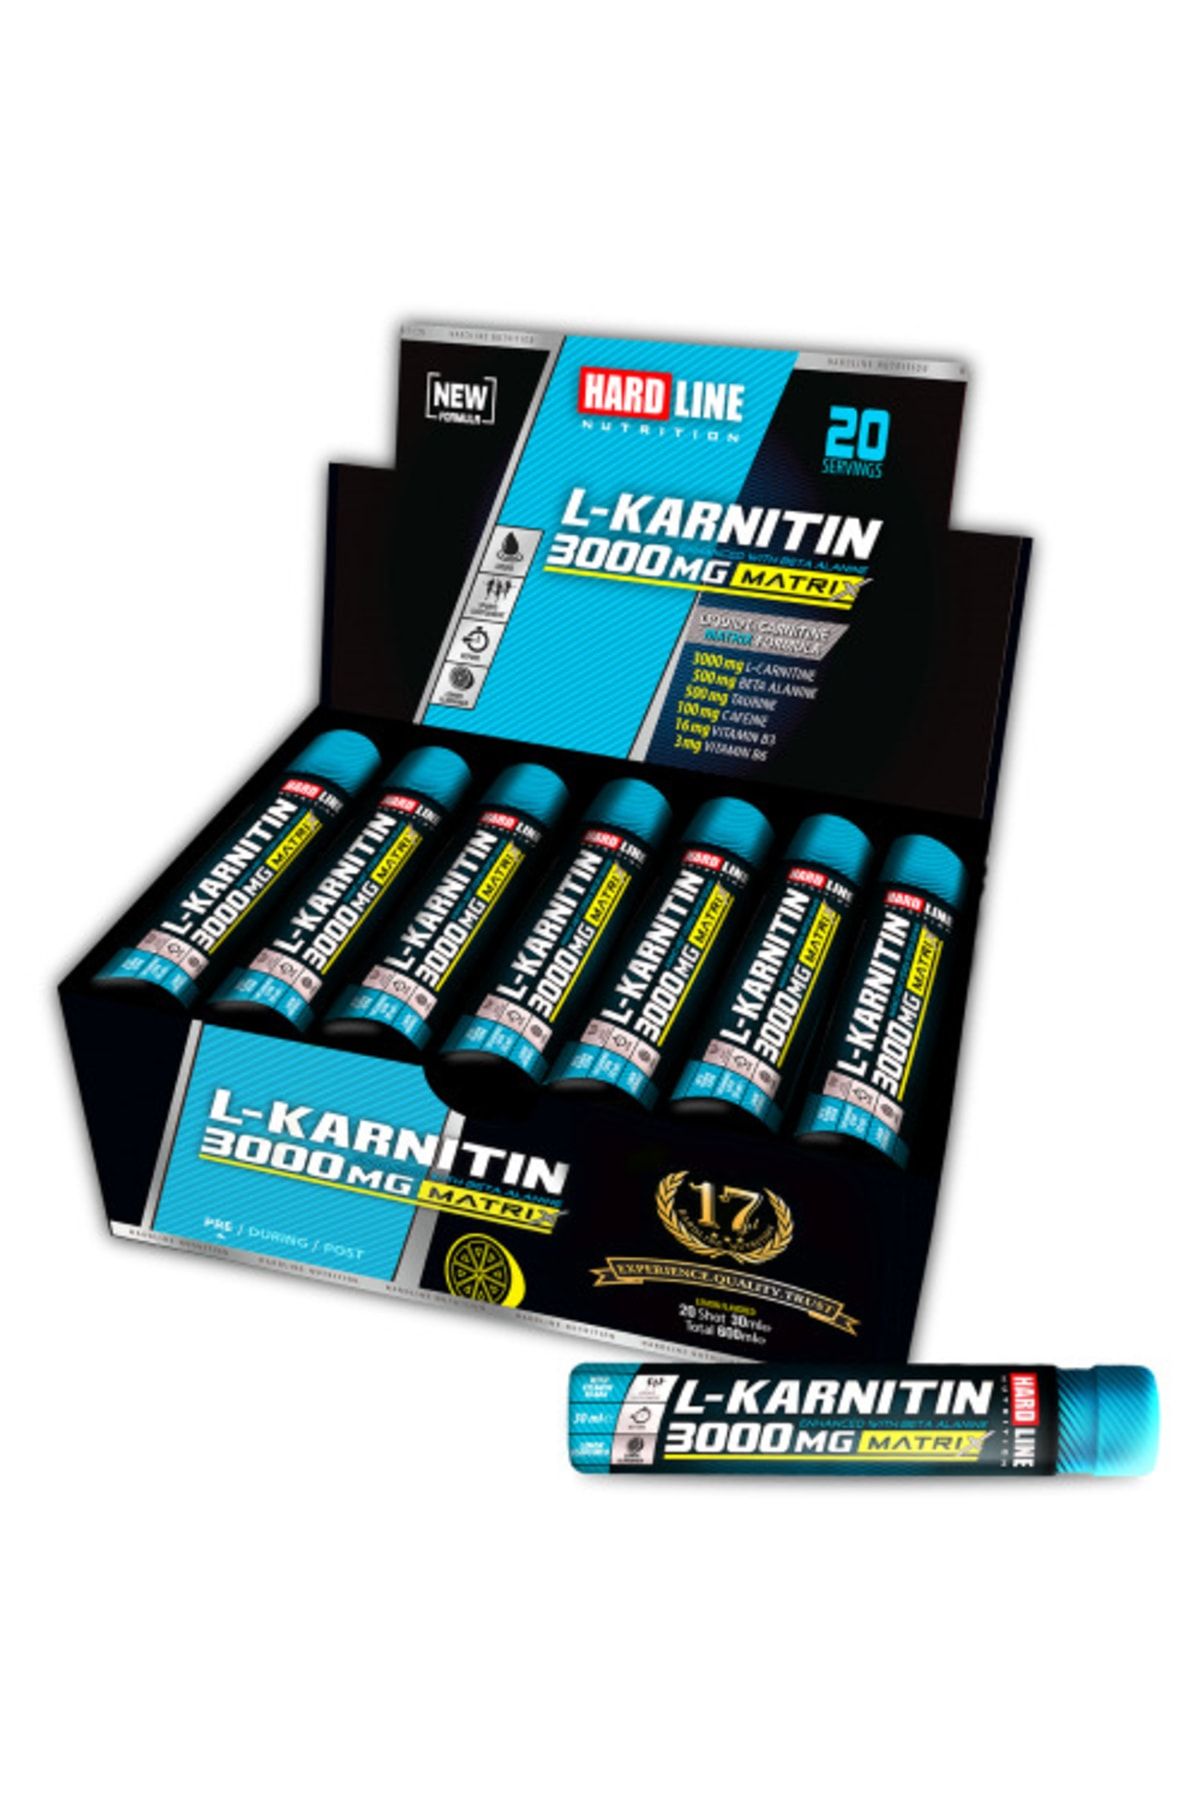 Hardline L-karnitin Matrix 3000 Mg 20 Ampül - Limon Aroma -